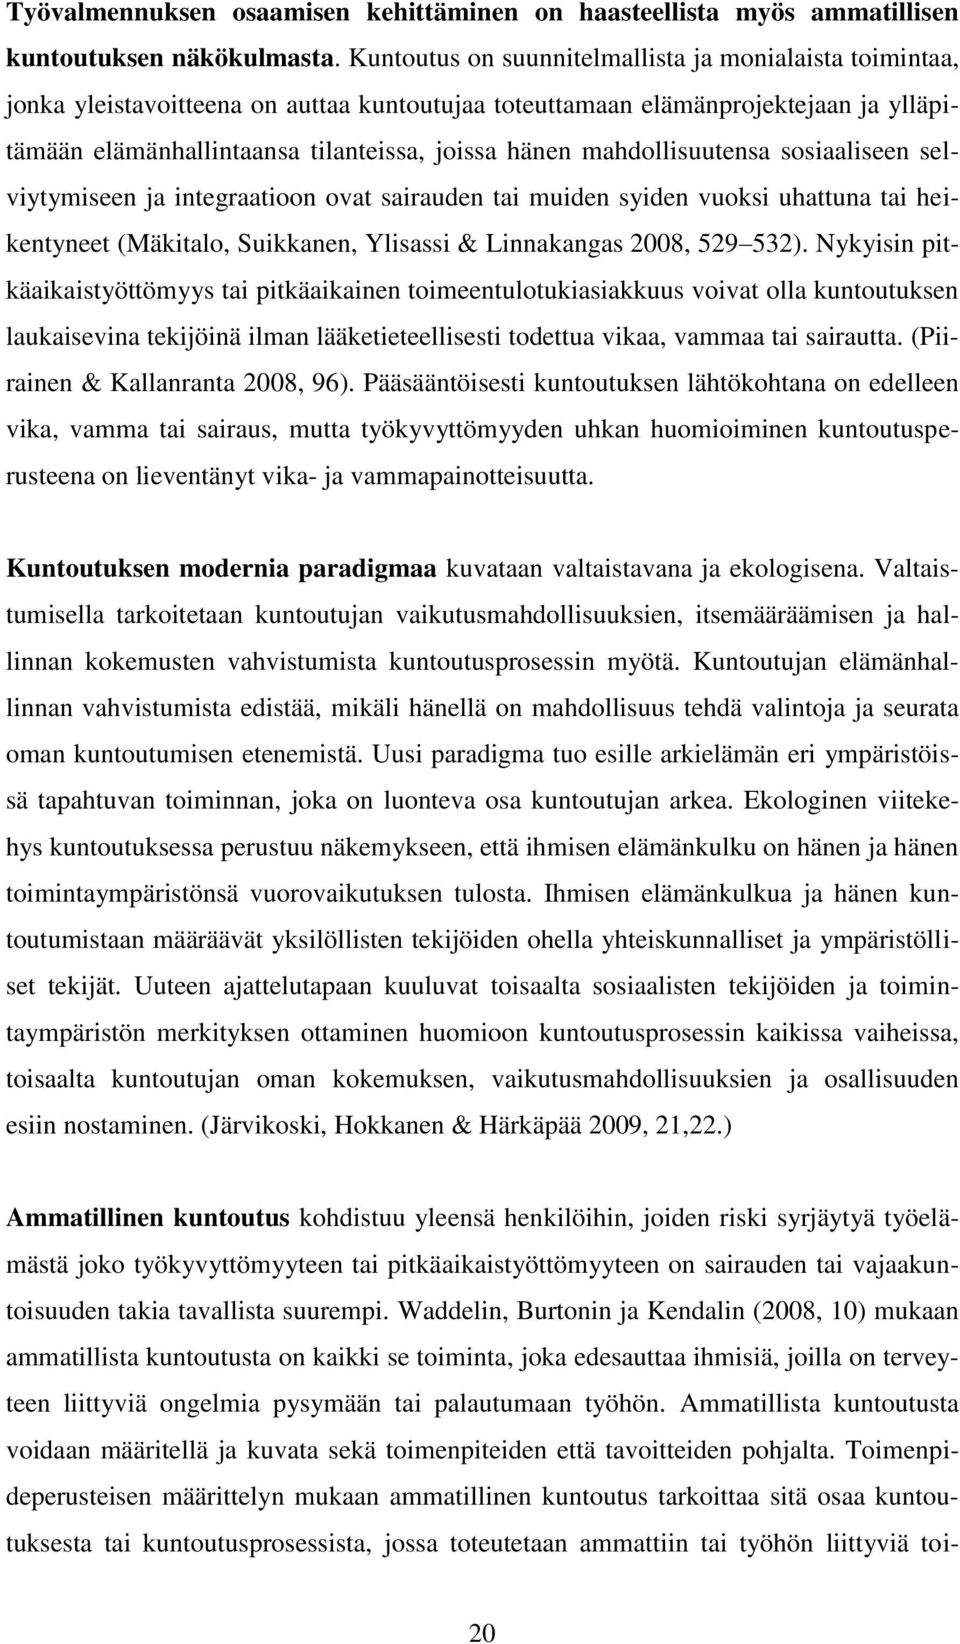 mahdollisuutensa sosiaaliseen selviytymiseen ja integraatioon ovat sairauden tai muiden syiden vuoksi uhattuna tai heikentyneet (Mäkitalo, Suikkanen, Ylisassi & Linnakangas 2008, 529 532).